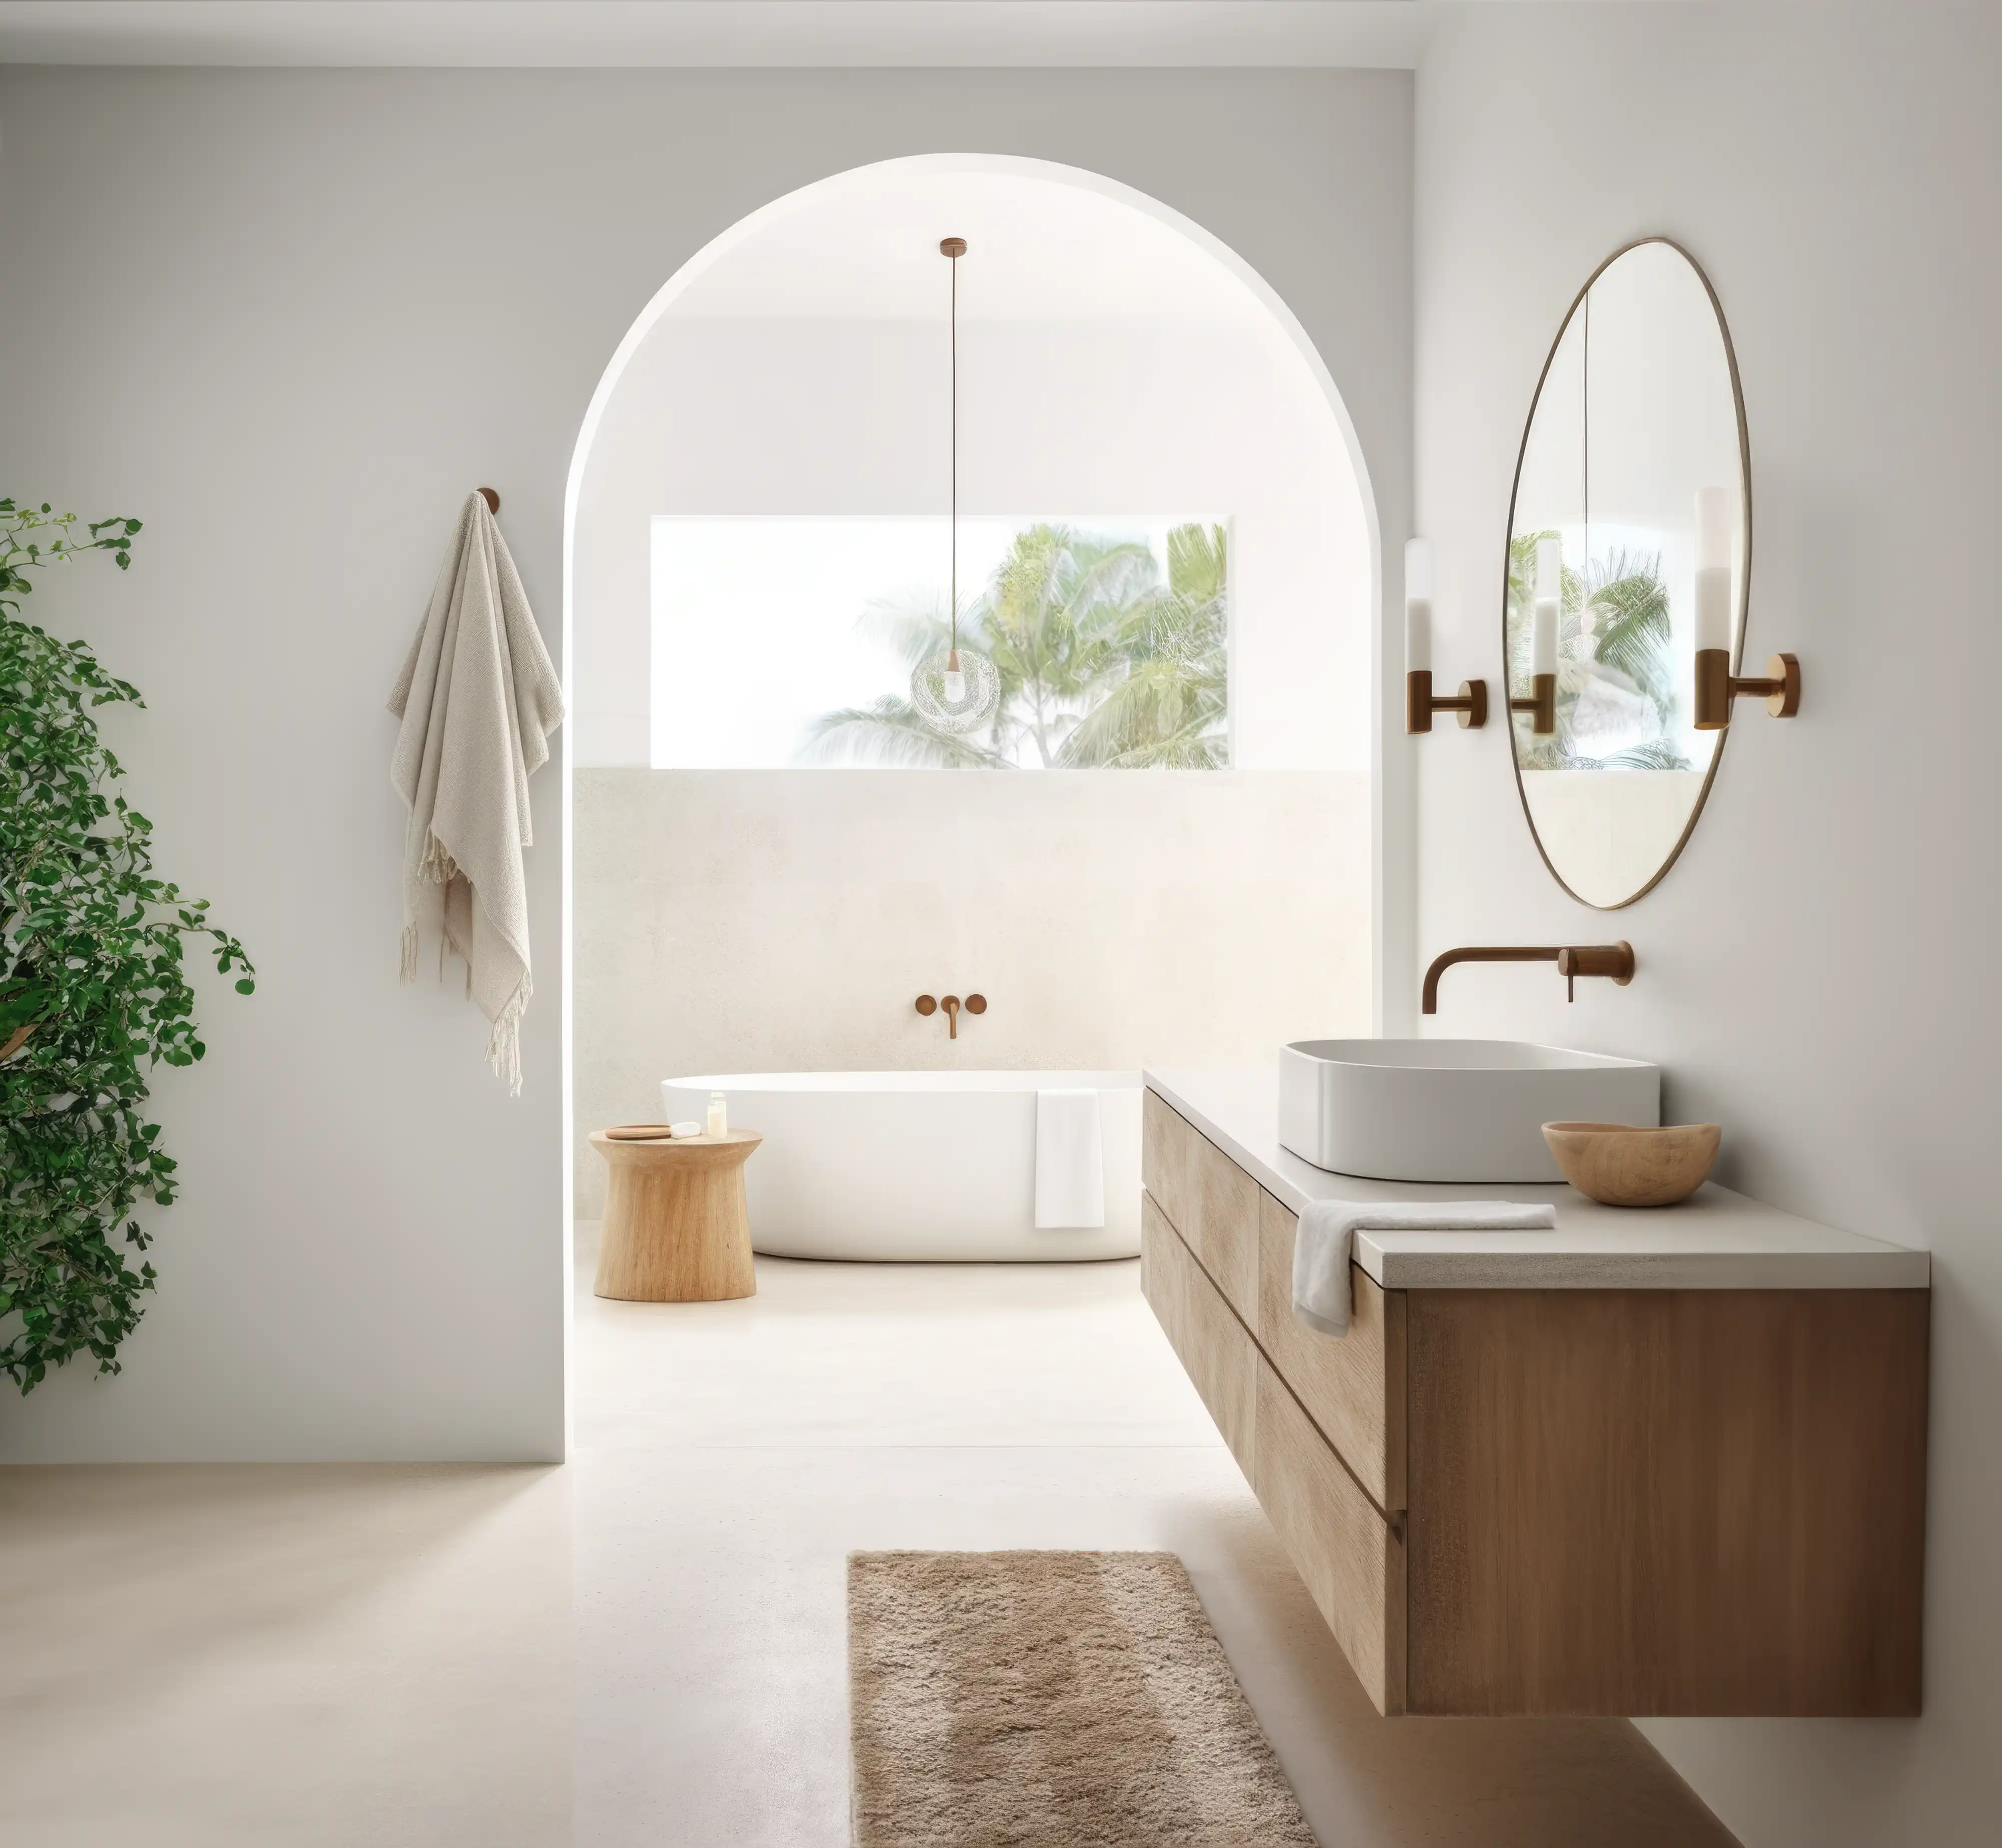 Une salle de bain moderne avec une baignoire blanche, une vanité en bois et une fenêtre avec une vue tropicale, intérieur signé Sarah Brown Design